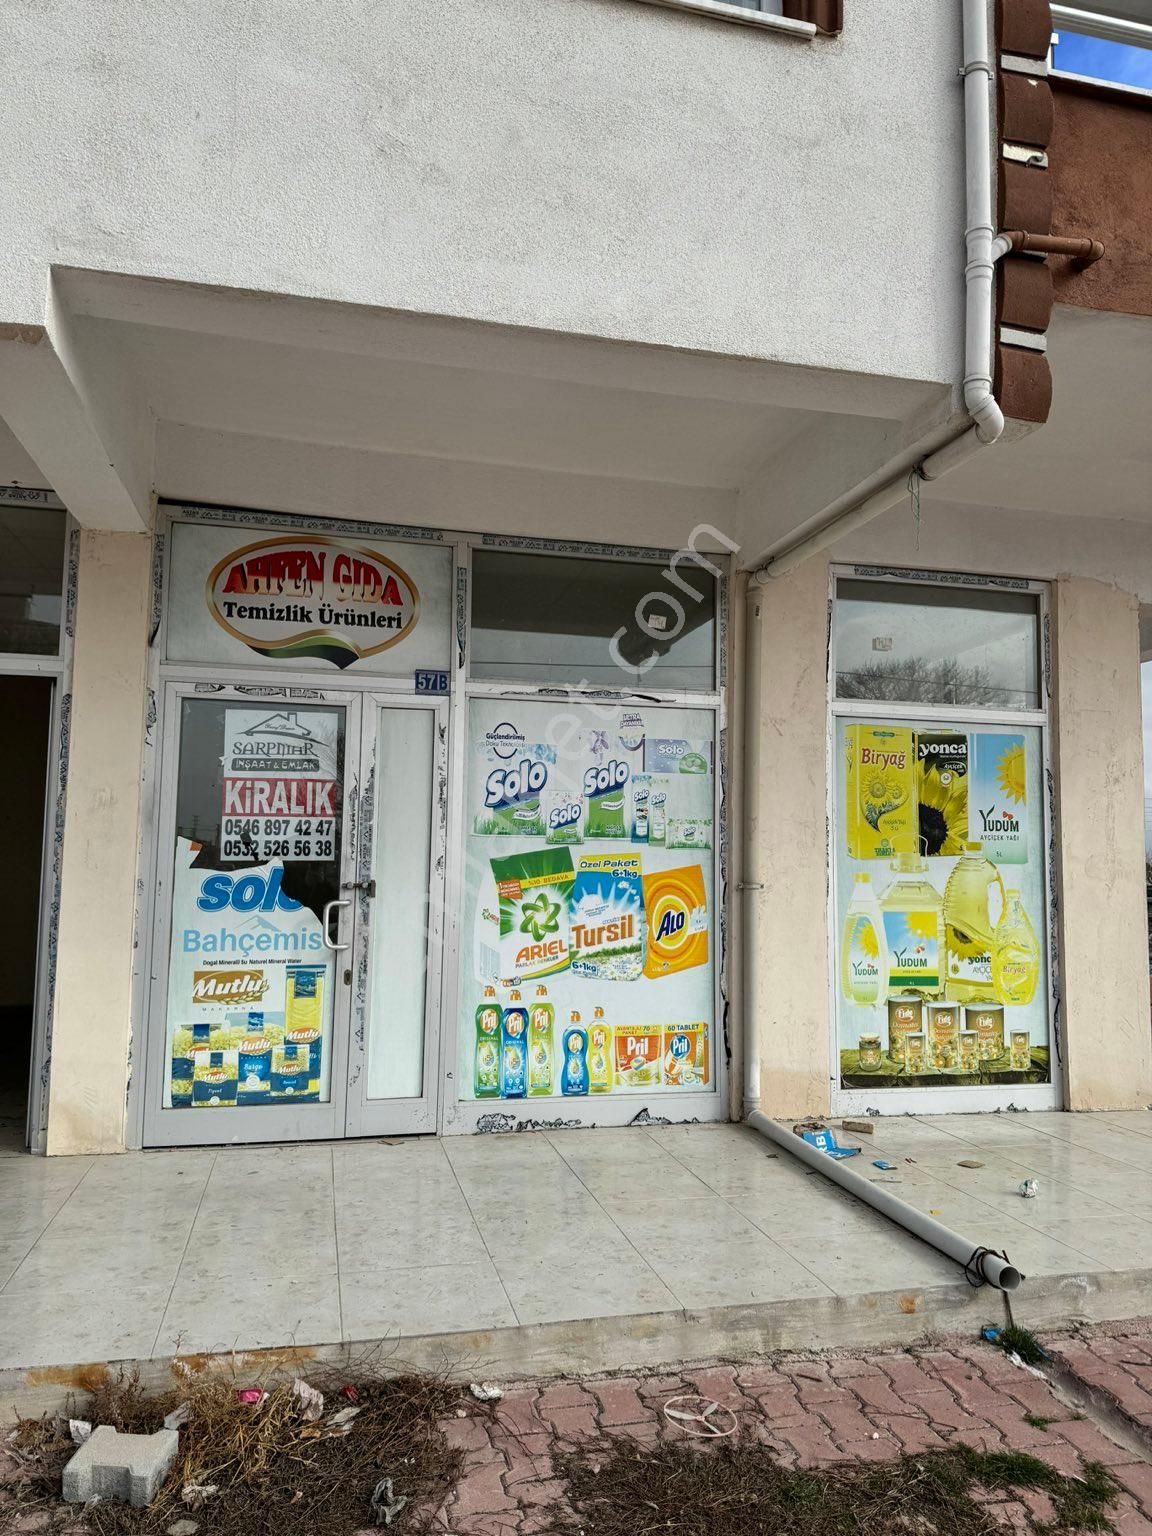 Karatay Çatalhüyük Kiralık Dükkan & Mağaza Konya karatay Çatalhöyük mah kiralık fırın ruhsatlı dükkan